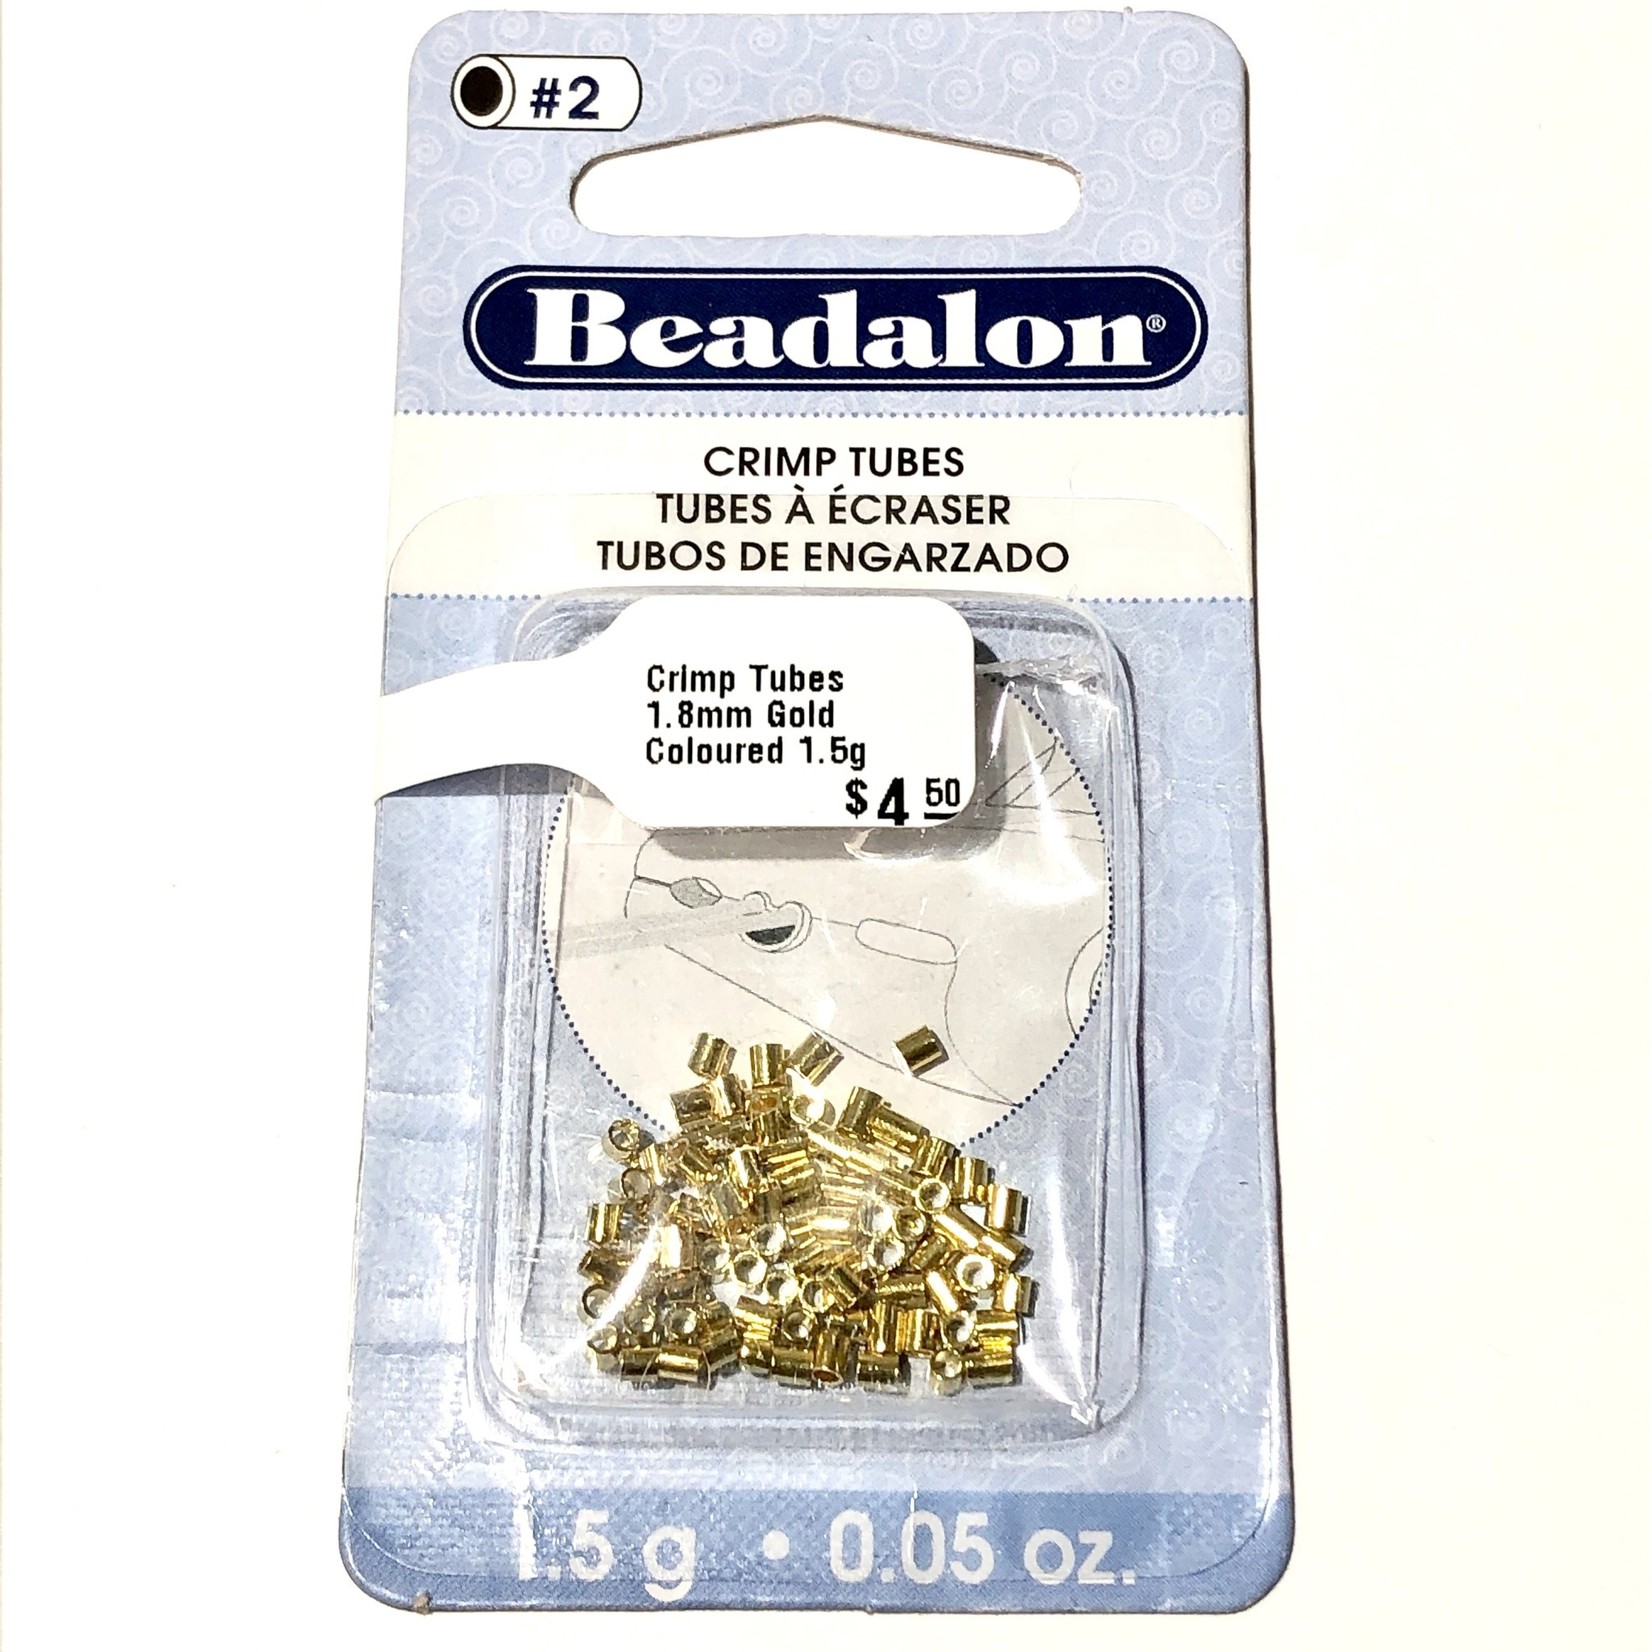 Beadalon Crimp Tubes 1.8mm Gold Coloured 1.5g